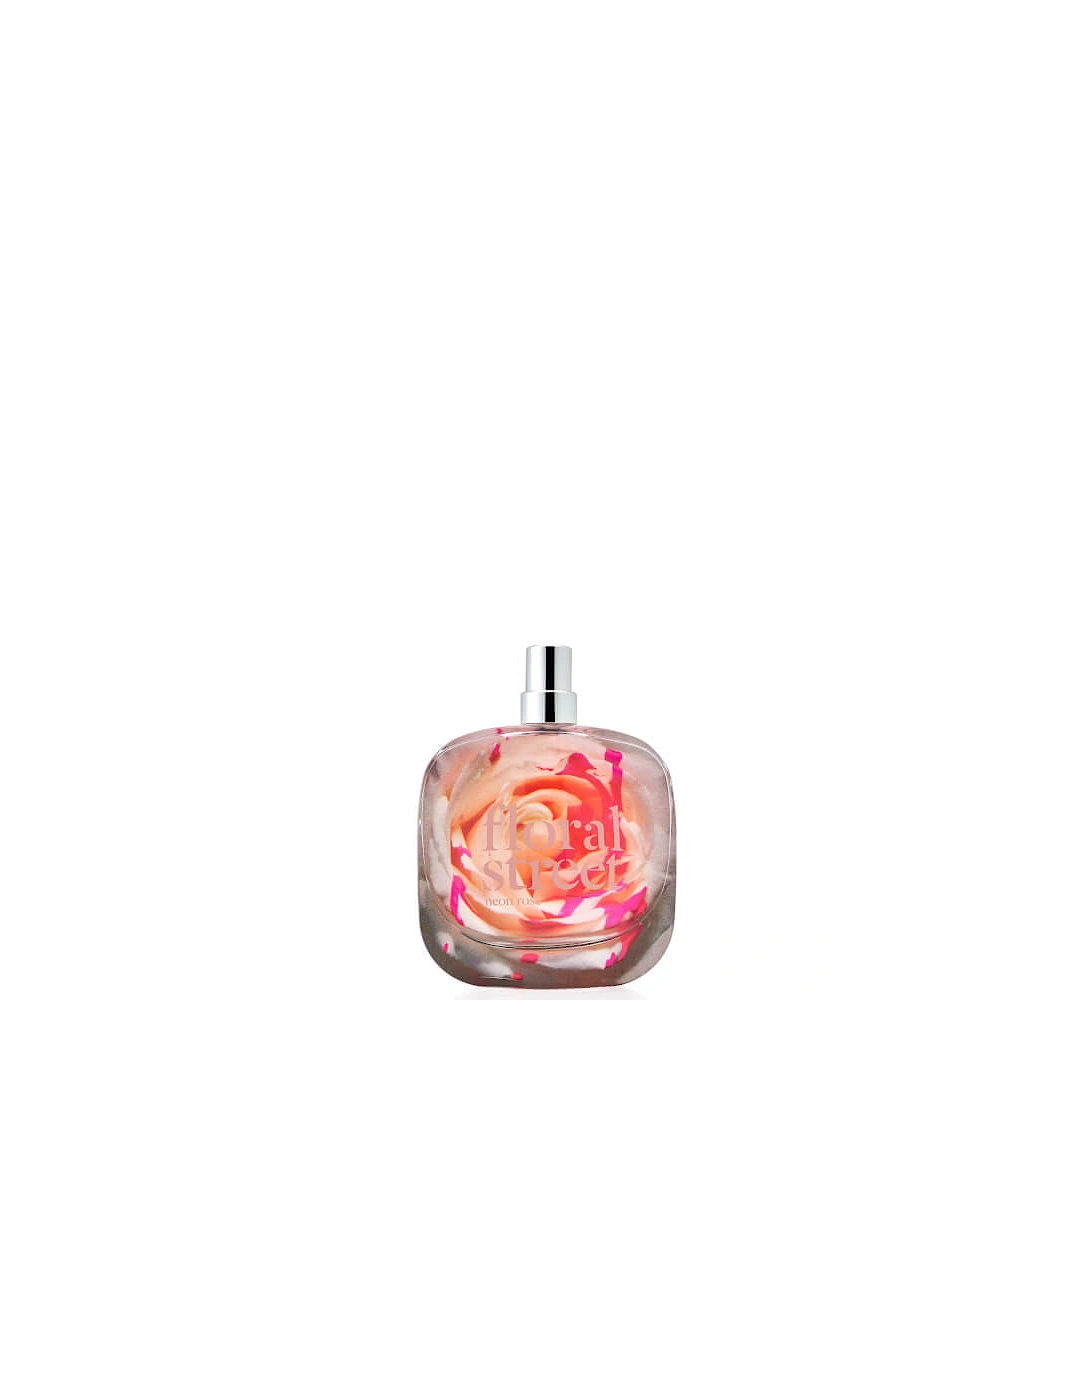 Neon Rose Eau de Parfum 50ml, 2 of 1